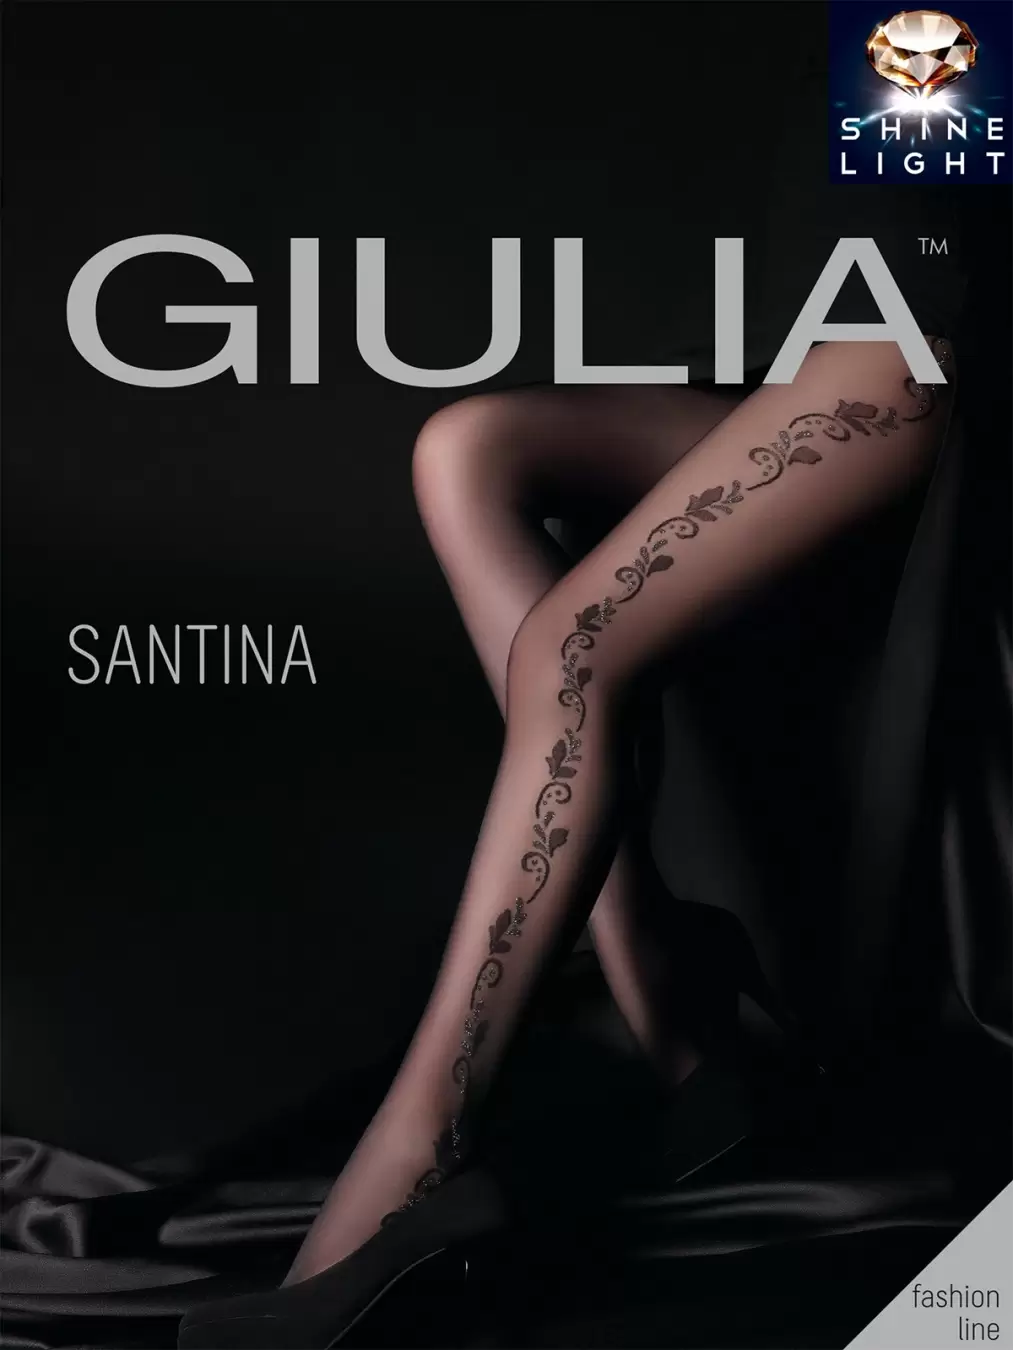 Giulia SANTINA 07, фантазийные колготки купить недорого в интернет